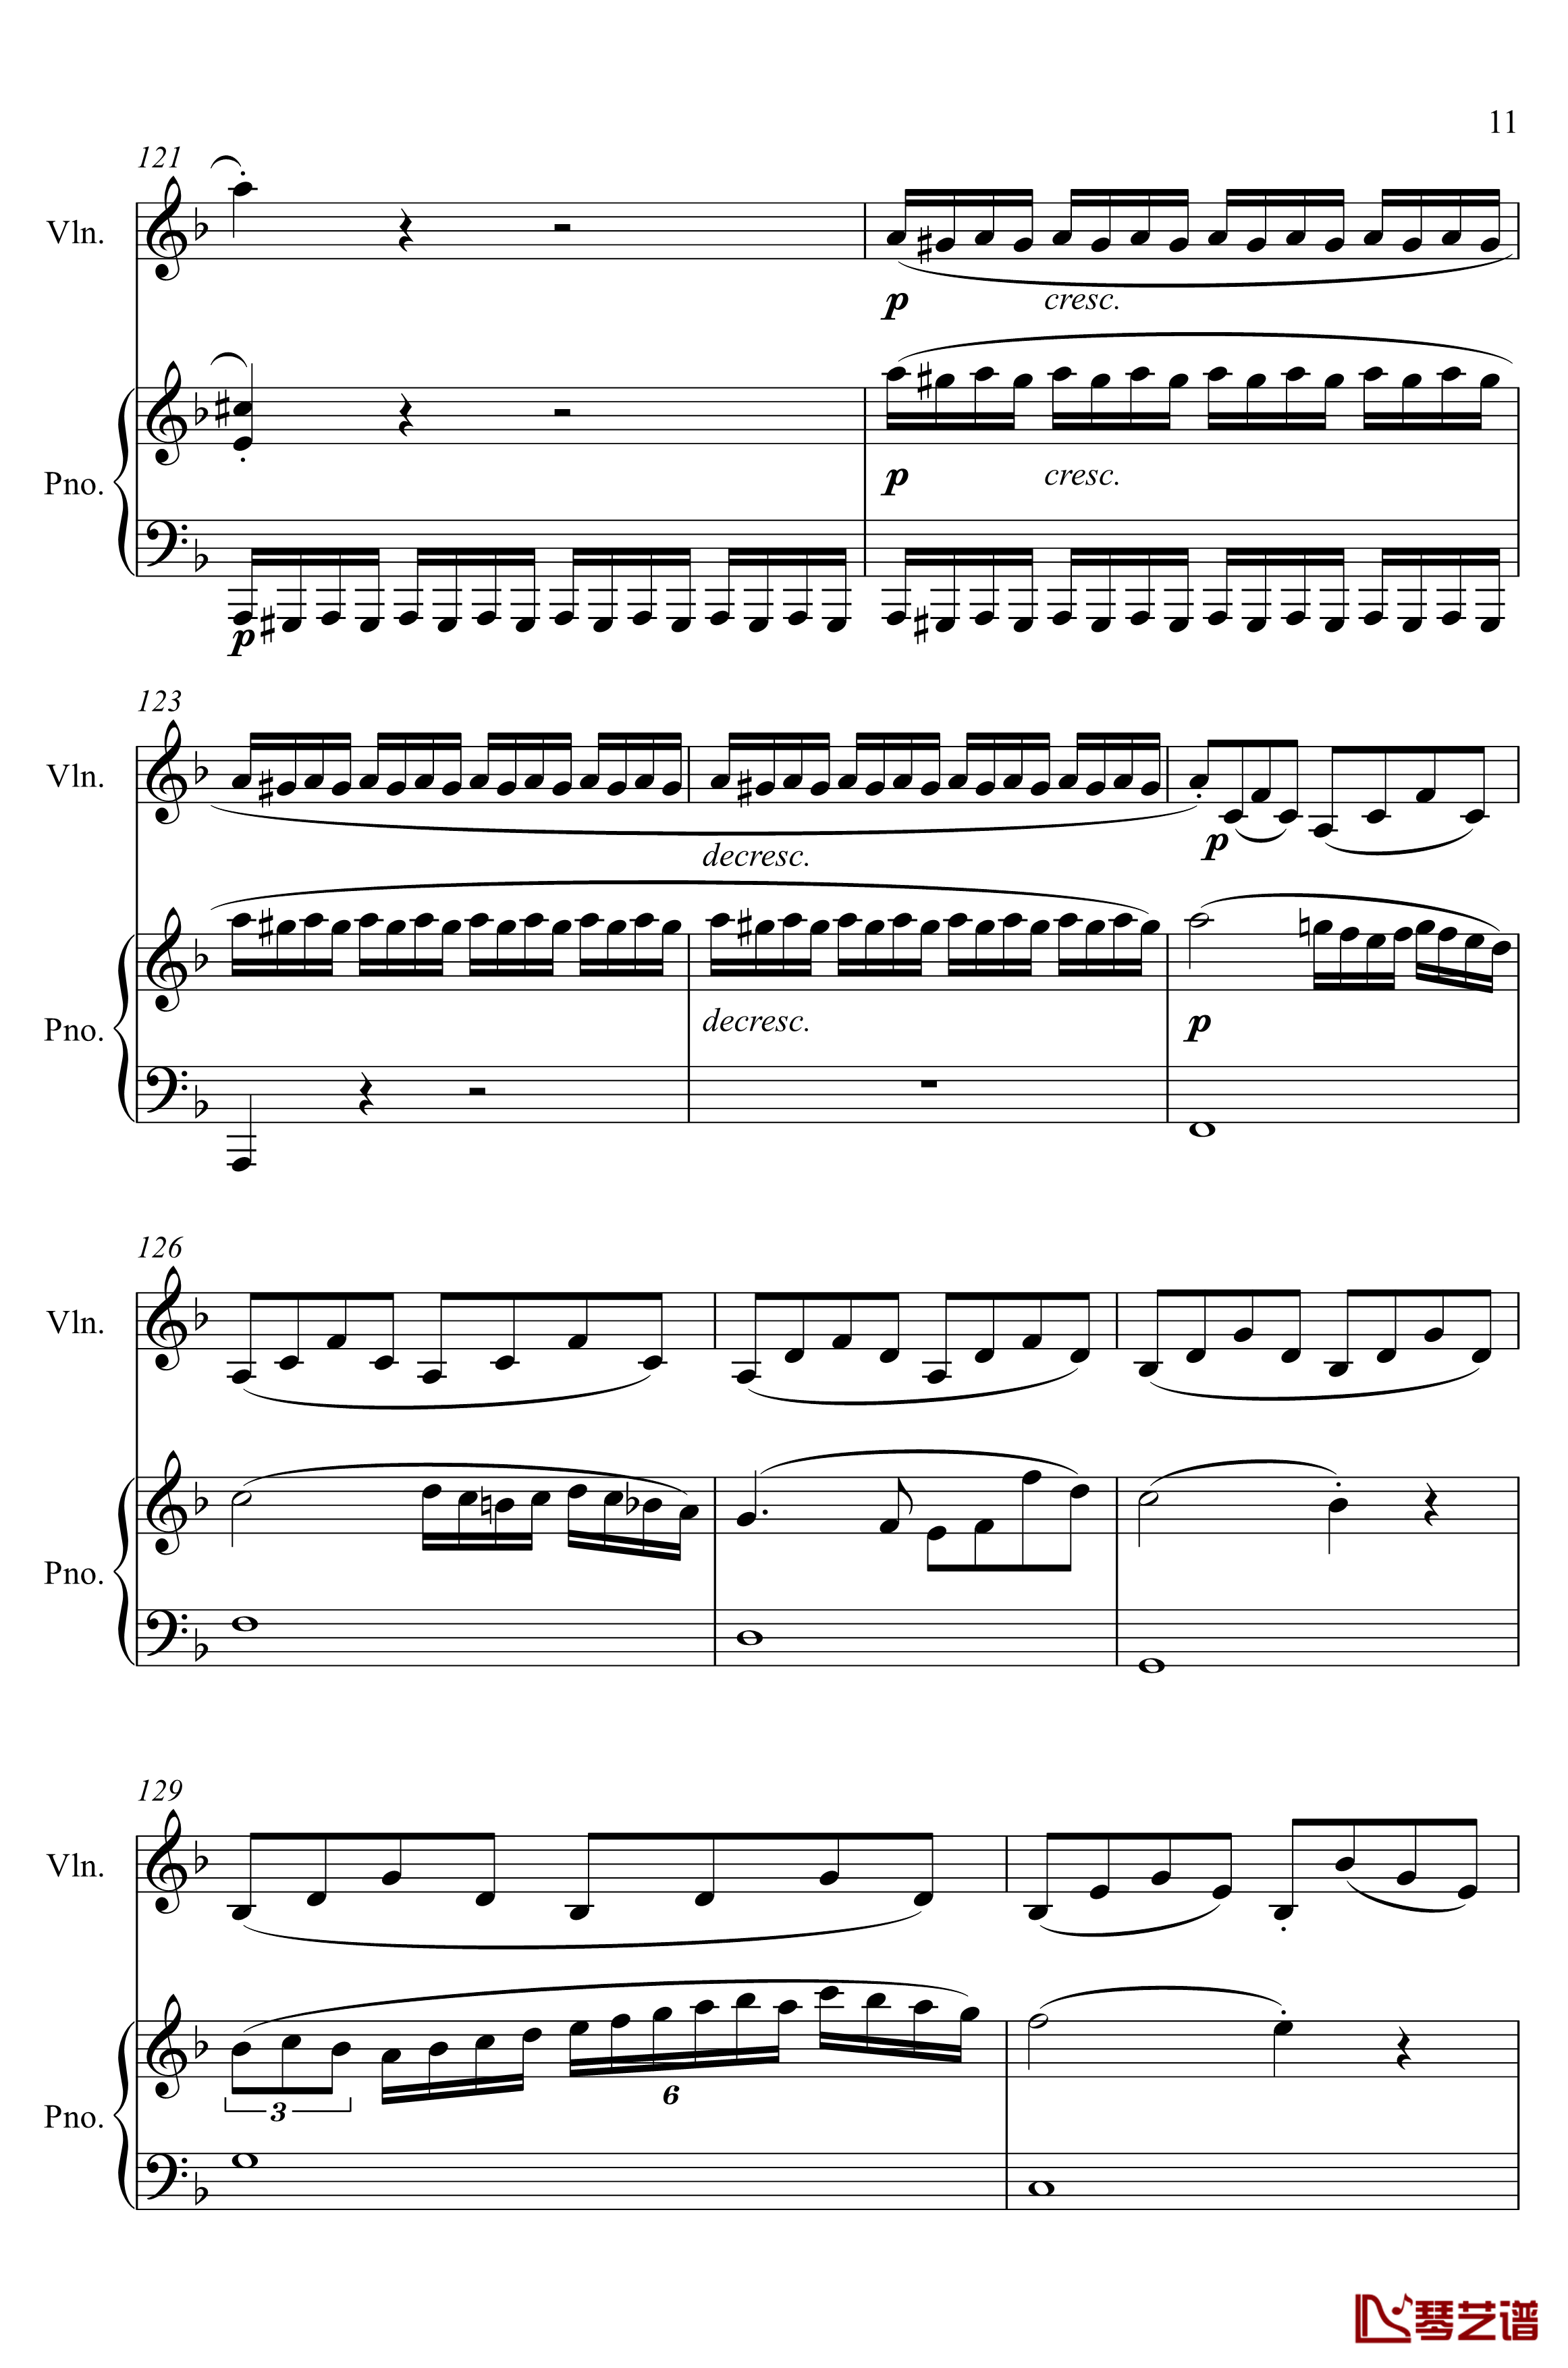 第5小提琴与钢琴奏鸣曲钢琴谱-第一乐章钢琴谱-贝多芬-beethoven11